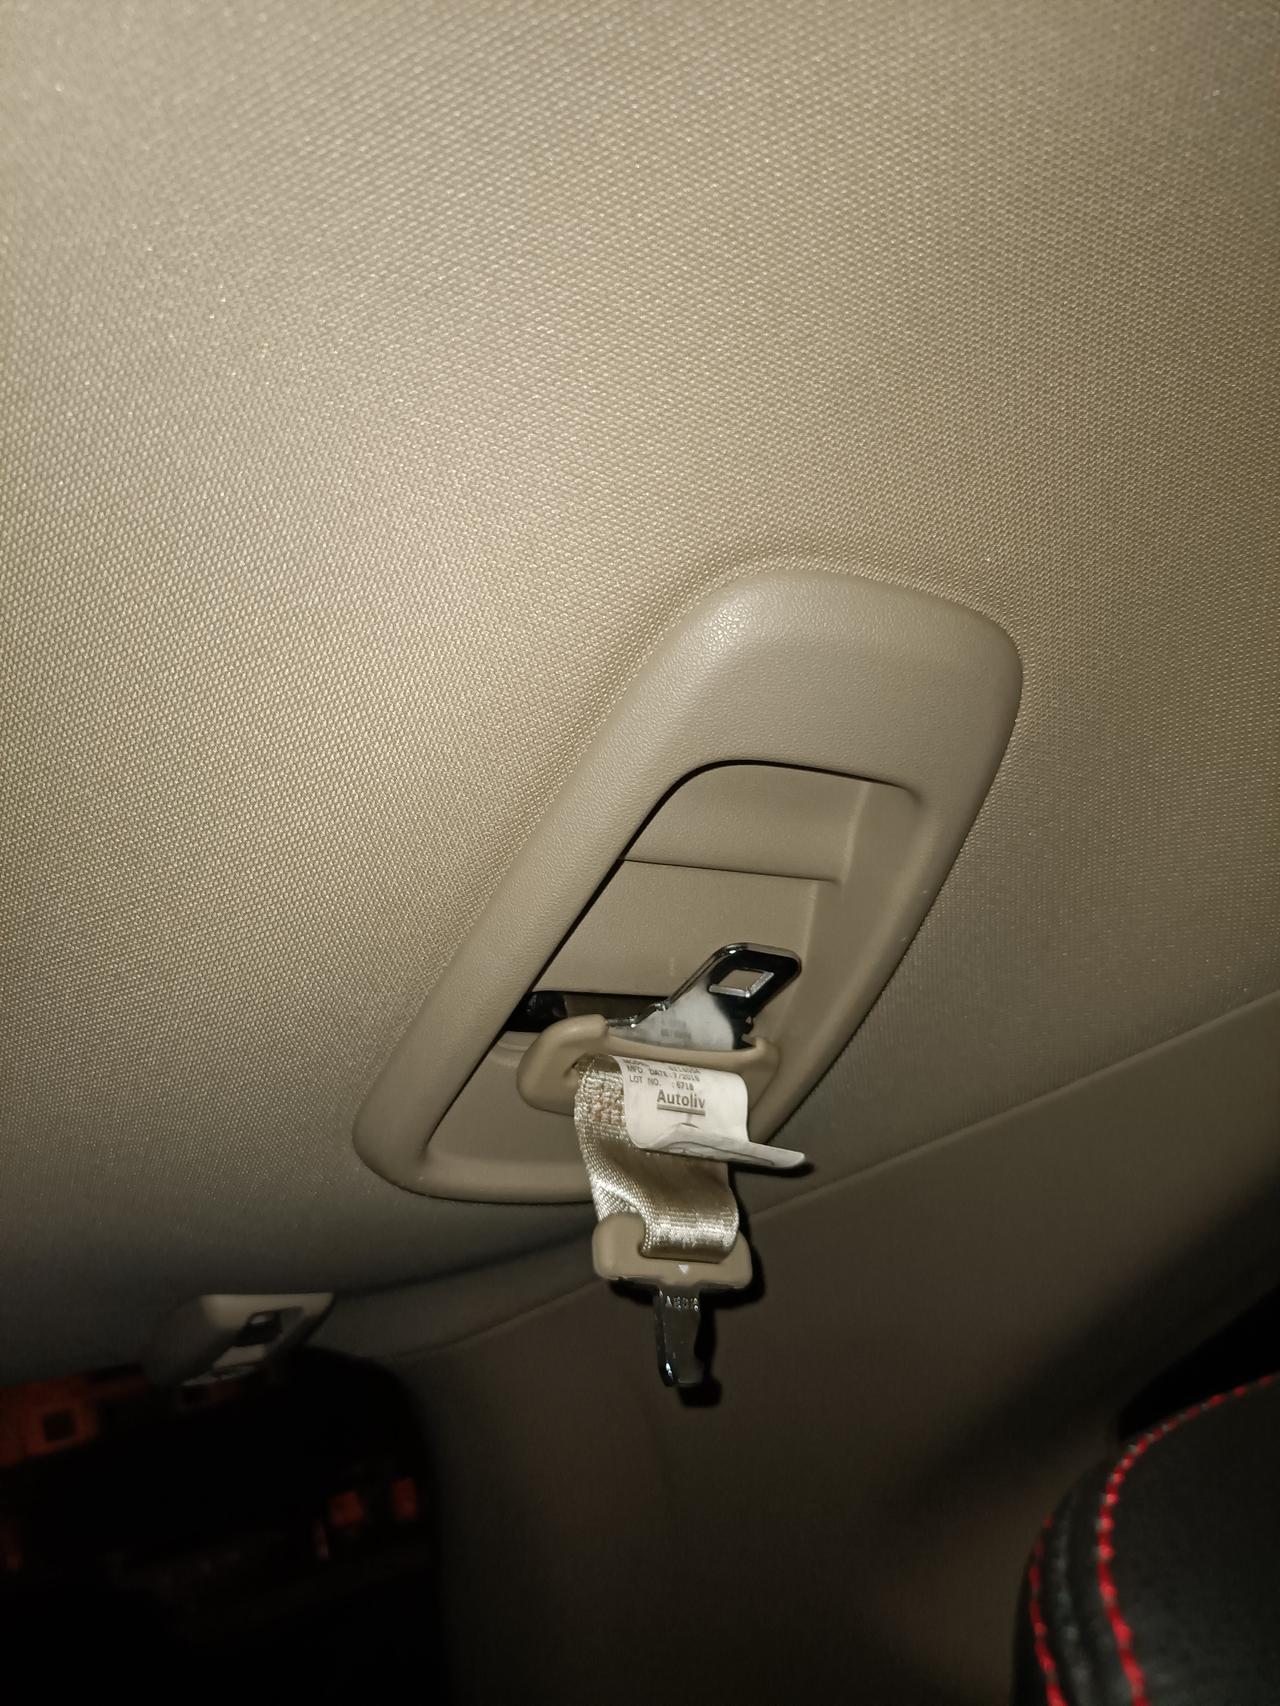 本田CR-V 这样的安全座椅插孔适合买哪种安全座椅，急急急